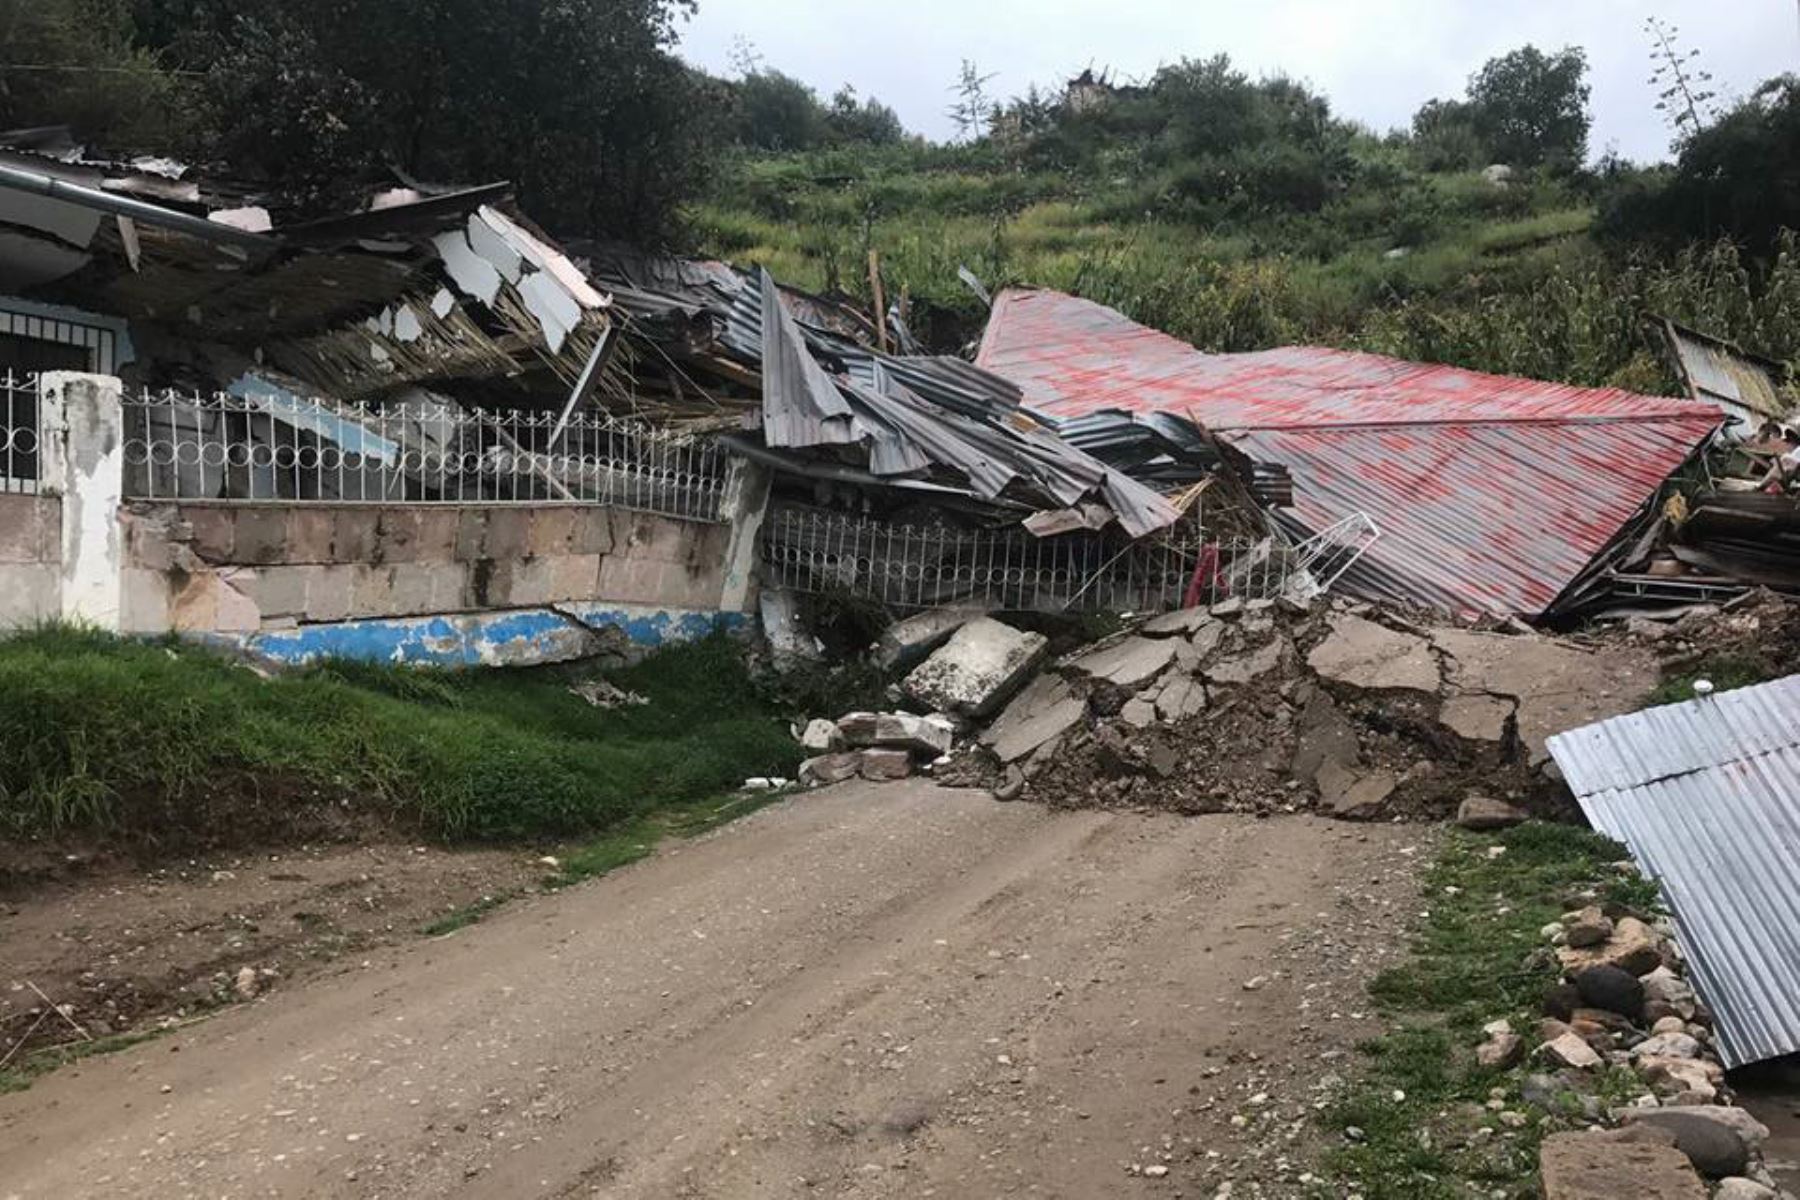 El Instituto Nacional de Defensa Civil (Indeci) informó hoy que hasta el momento suman 47 las familias damnificadas por el desplazamiento de terreno, debido a las intensas lluvias, en el distrito de Llusco, provincia cusqueña de Chumbivilcas, según la evaluación preliminar de daños de las autoridades locales. ANDINA